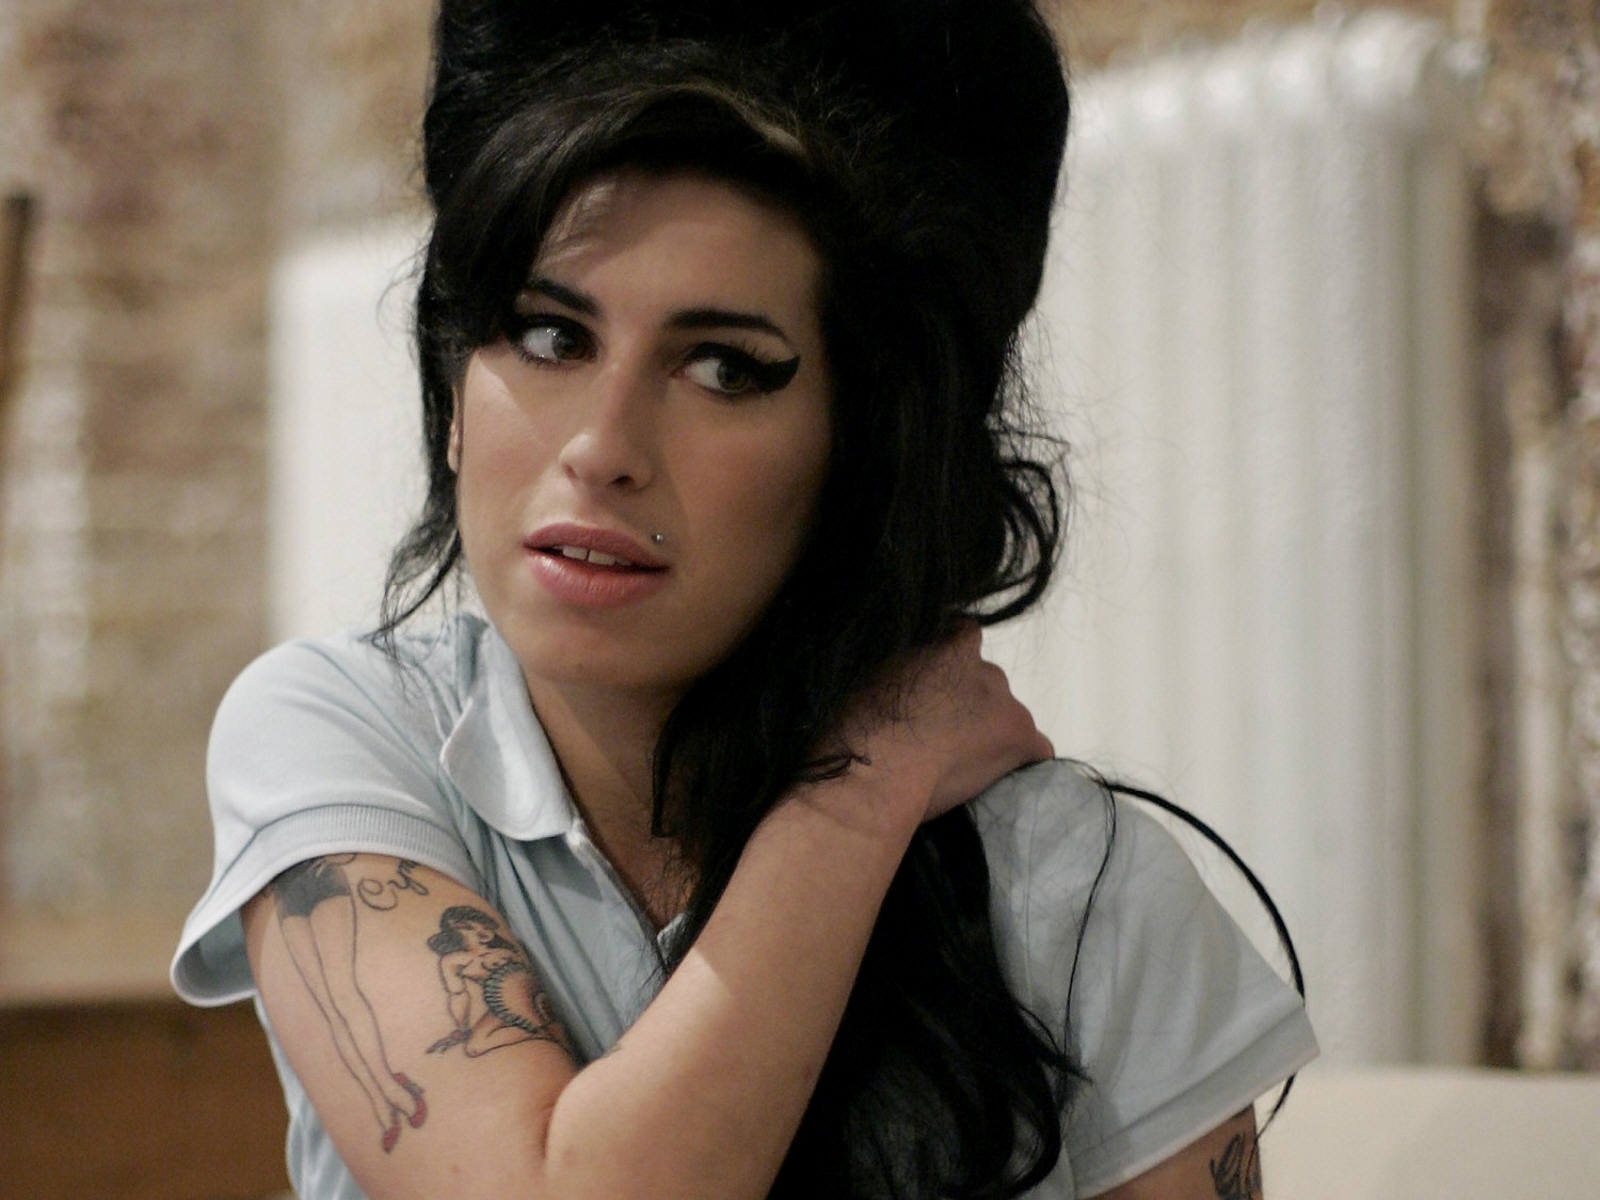 Fond d'ecran Amy Winehouse et ses cheveux